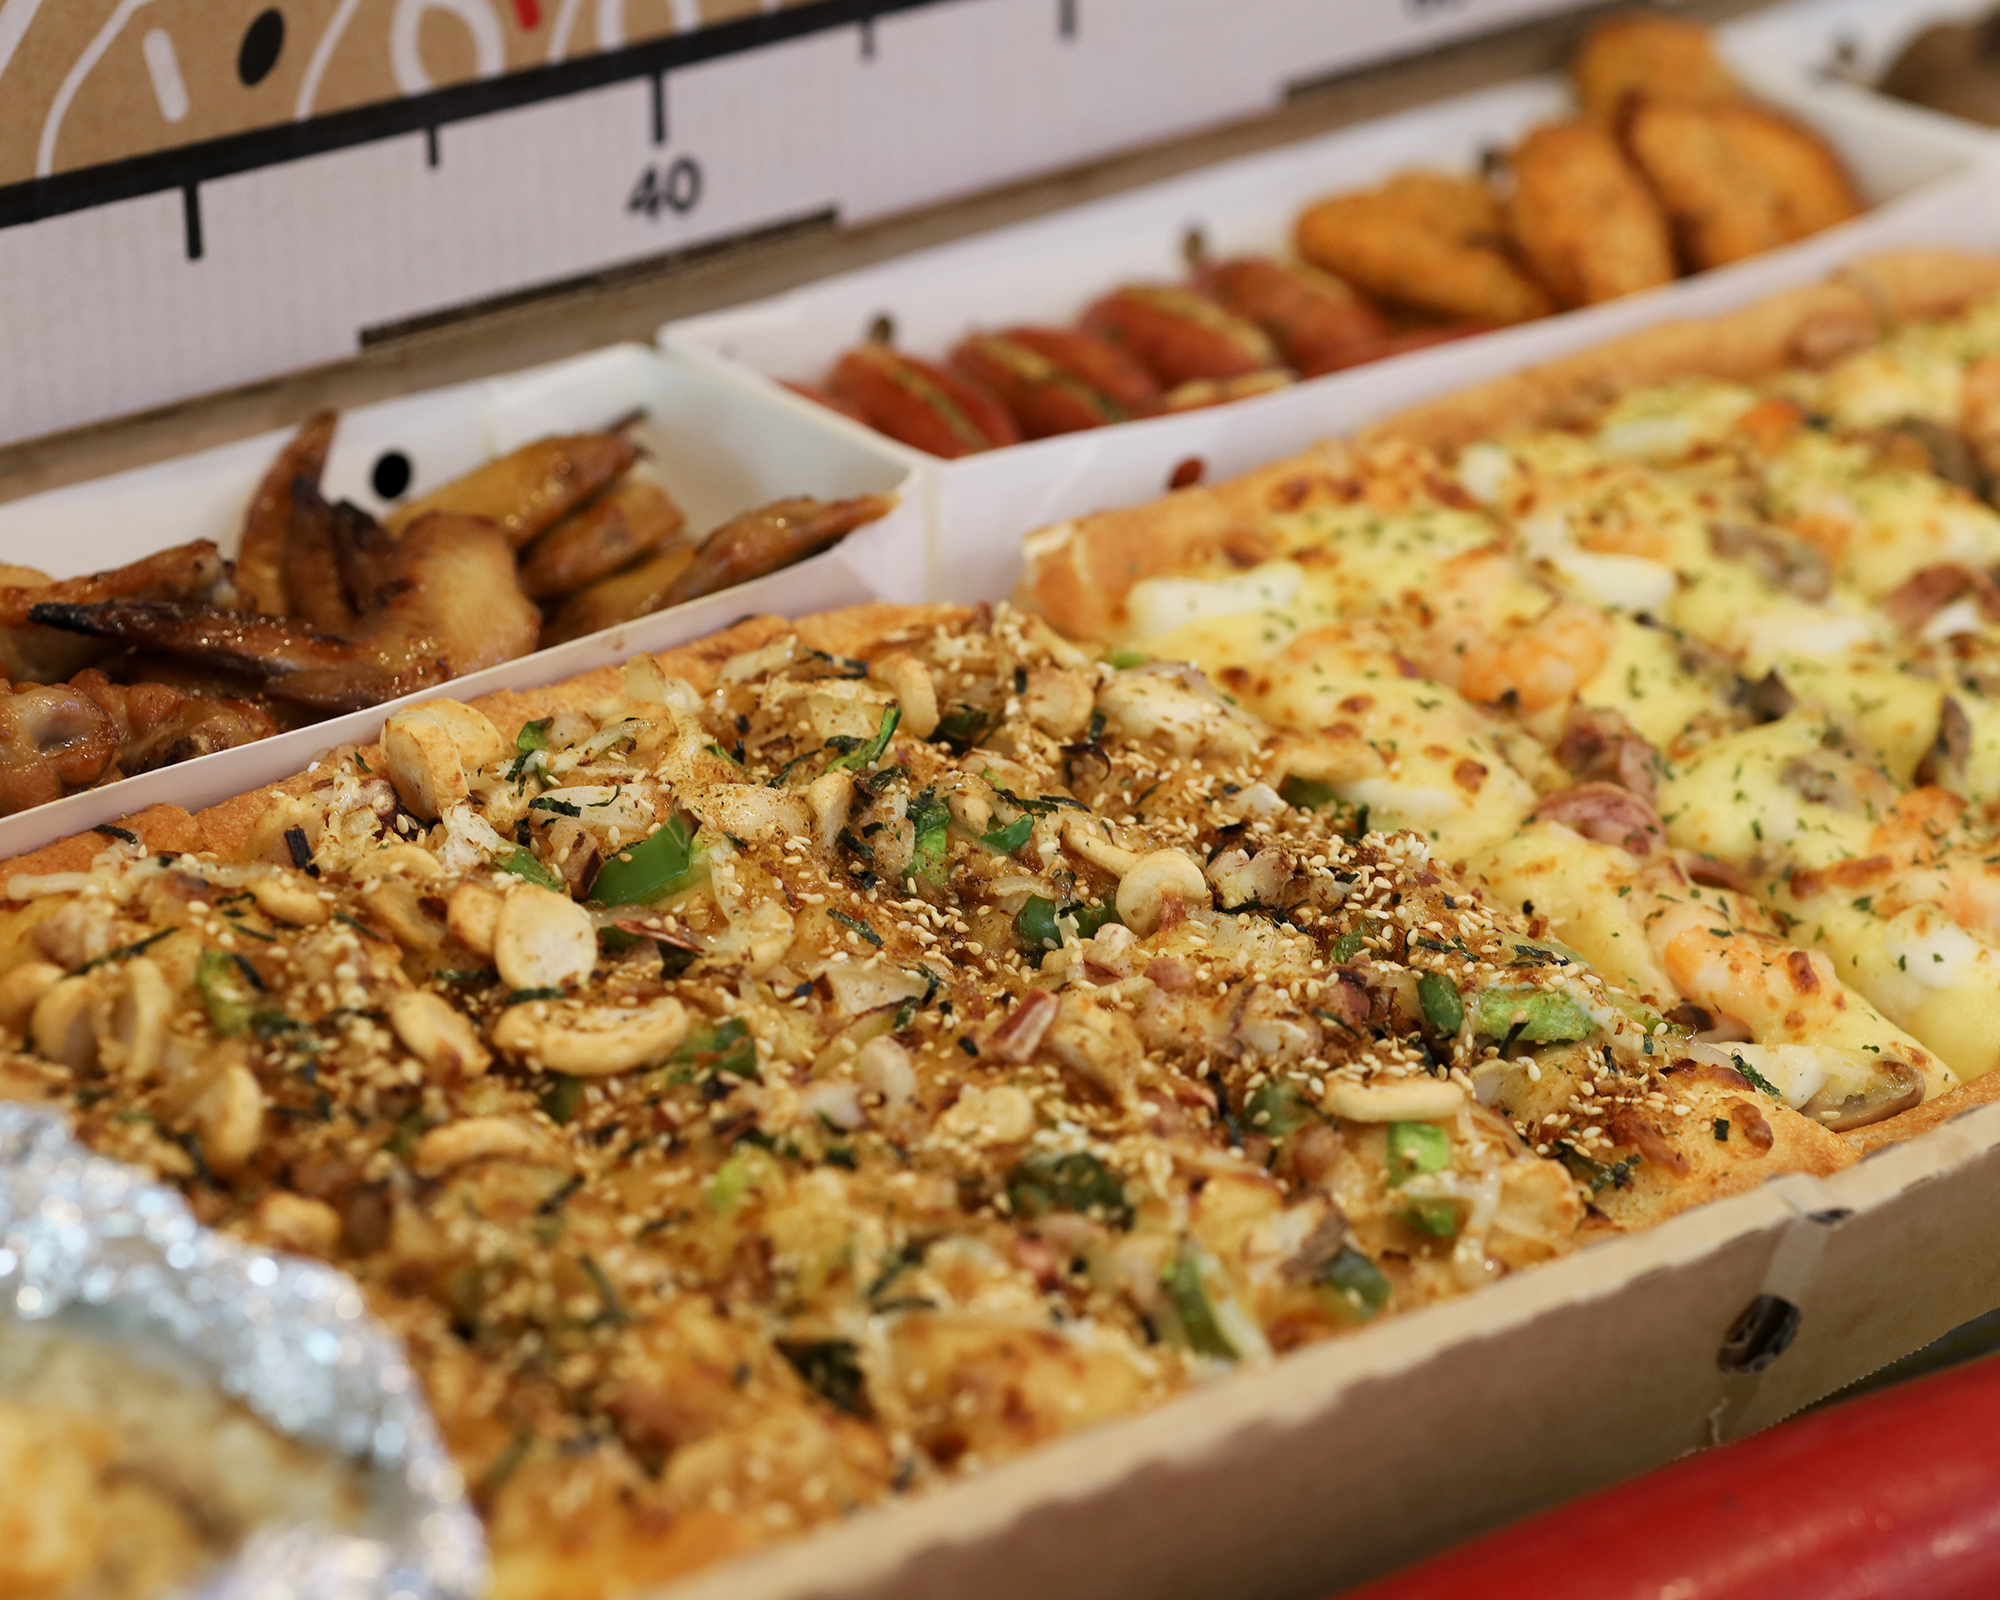 必勝客「一公尺派對巨飽盒」包含大比薩、紙包筆管麵、BBQ 烤雞、薯金幣、德國芝心腸、麻糬 QQ 球、黃金和風鱈魚塊